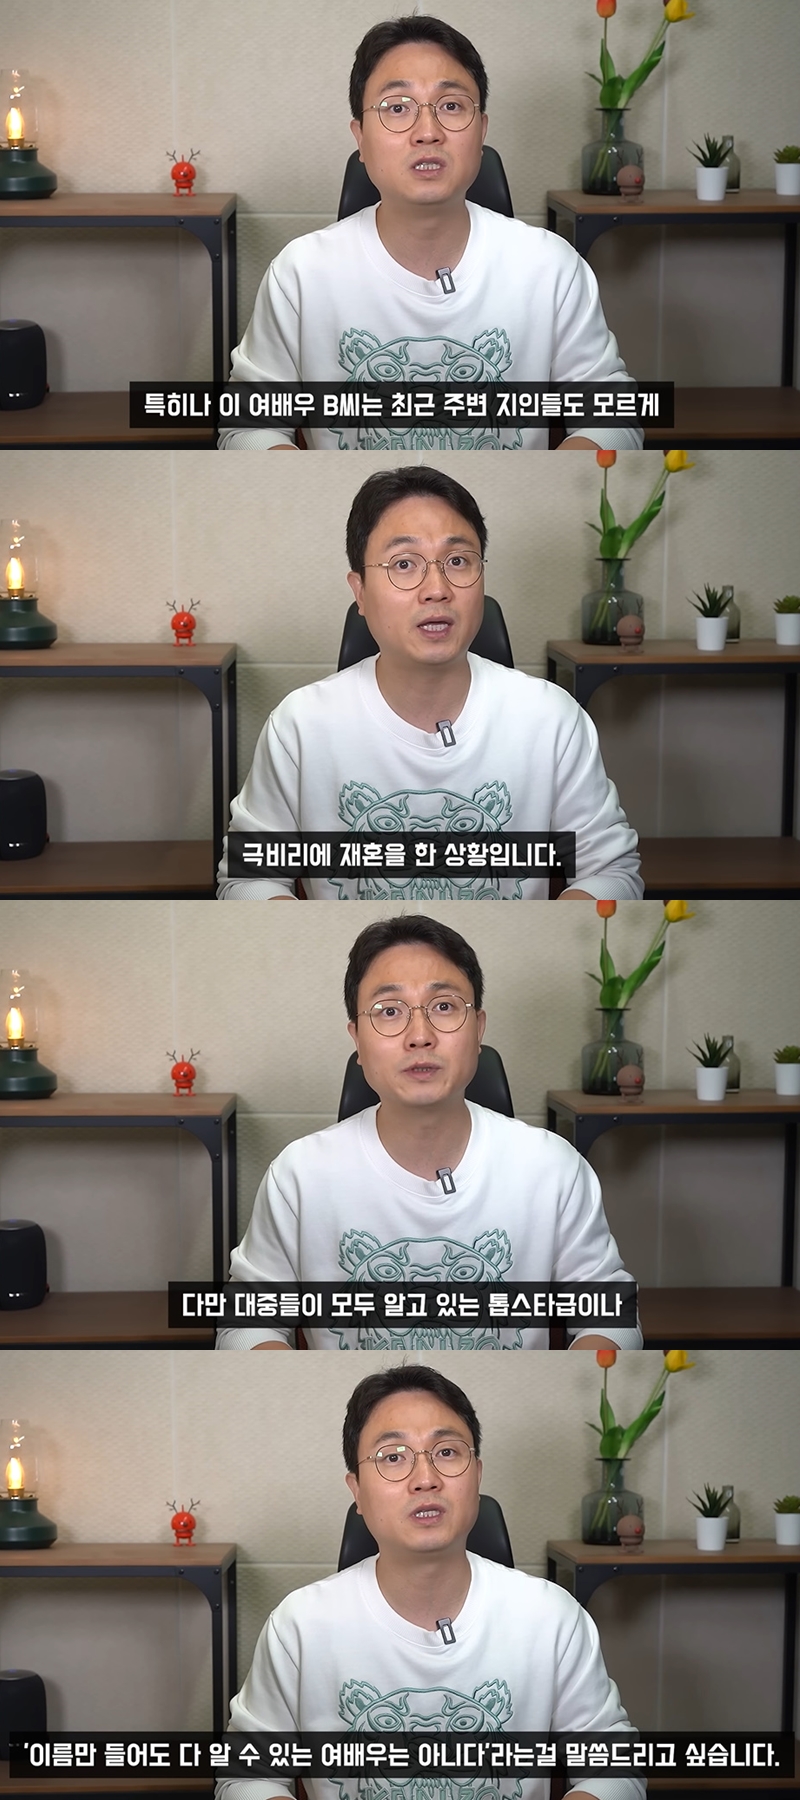 ▲ 출처| 유튜브 채널 '연예 뒤통령이진호' 영상 캡처